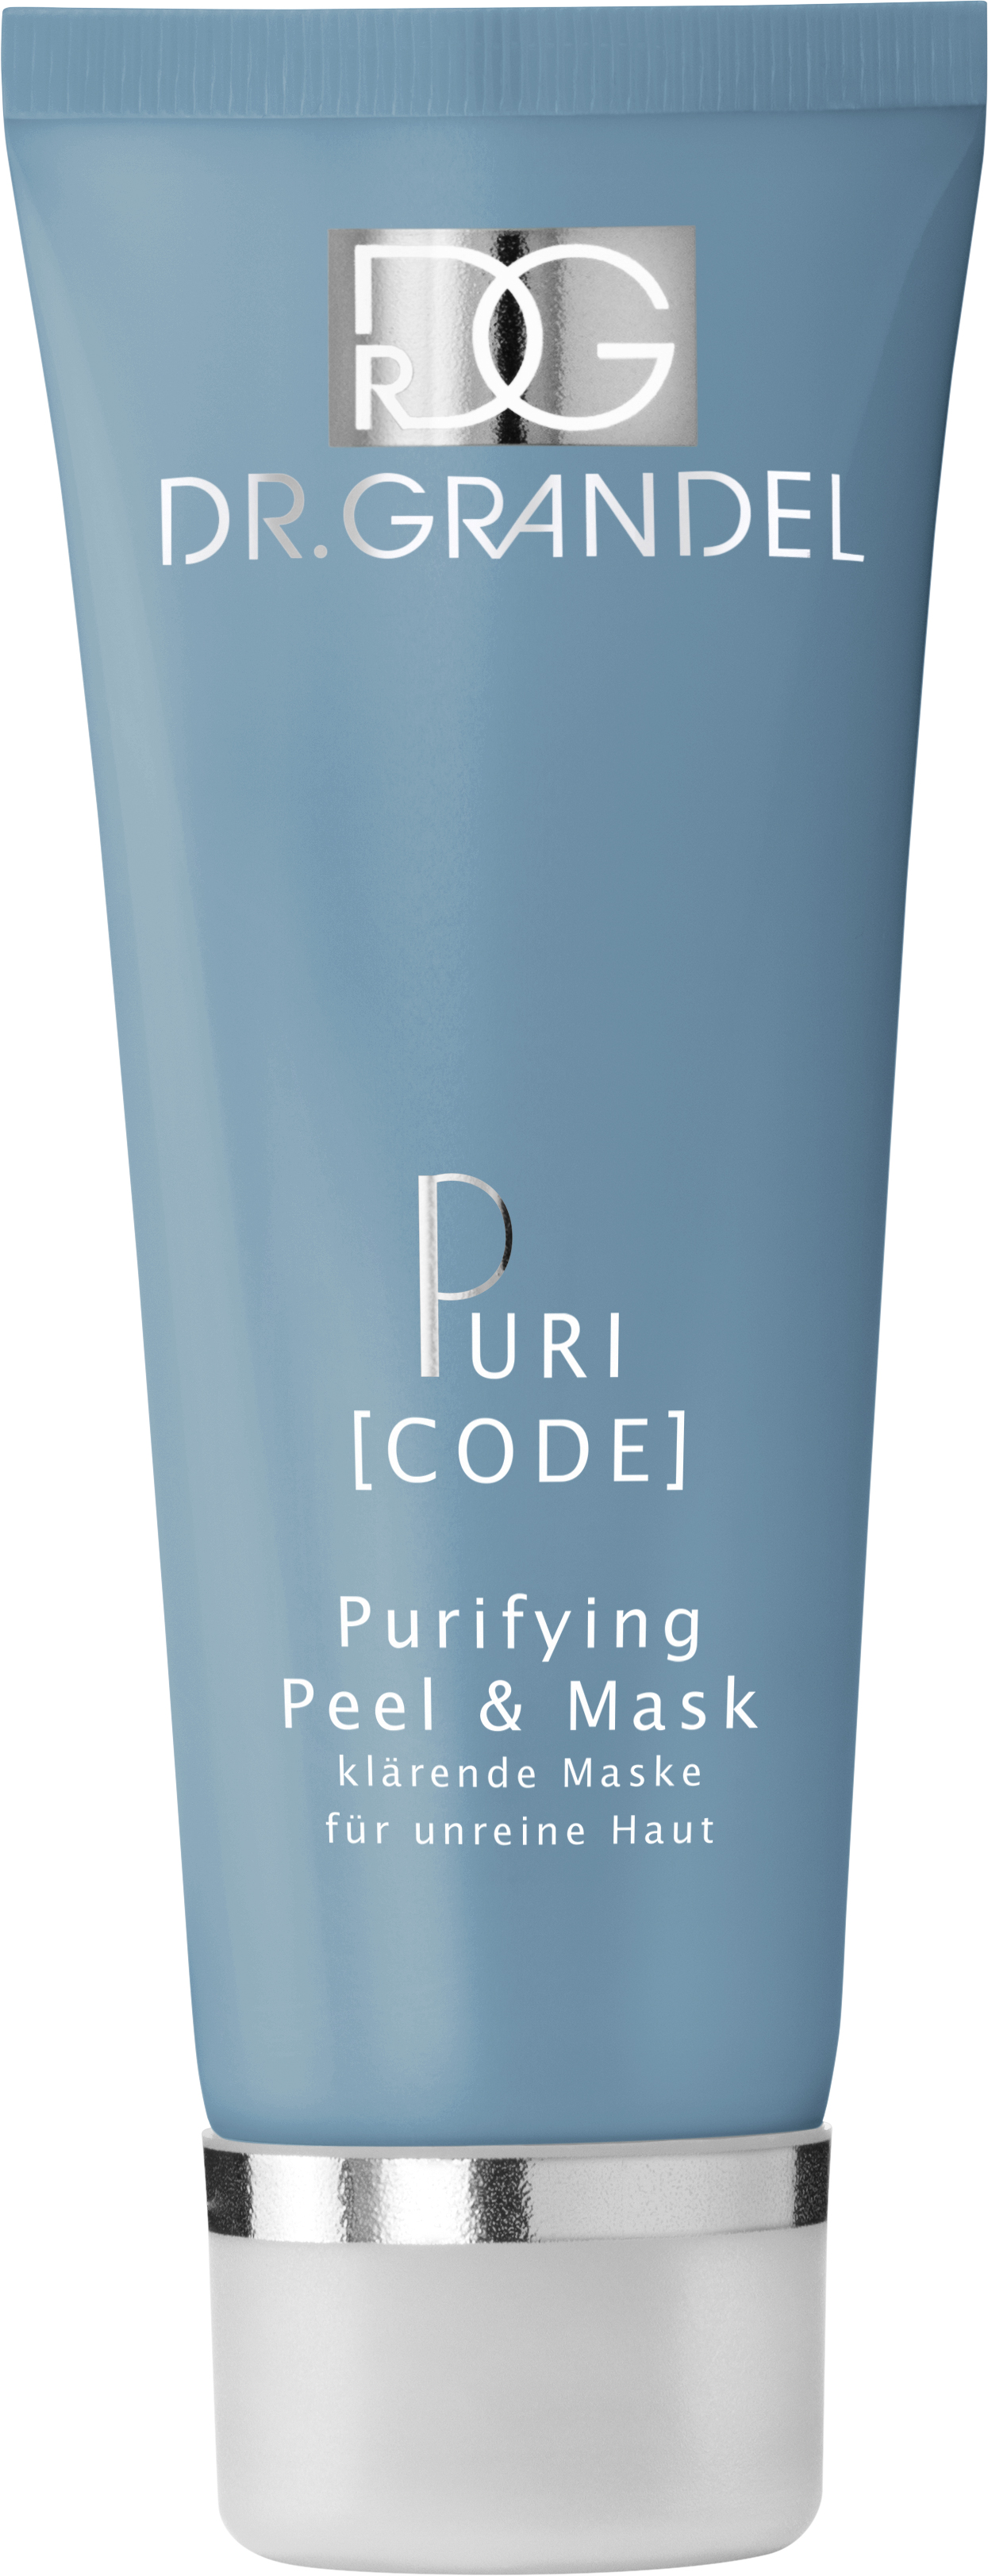 Purifying Peel & Mask - klärende Maske für unreine Haut